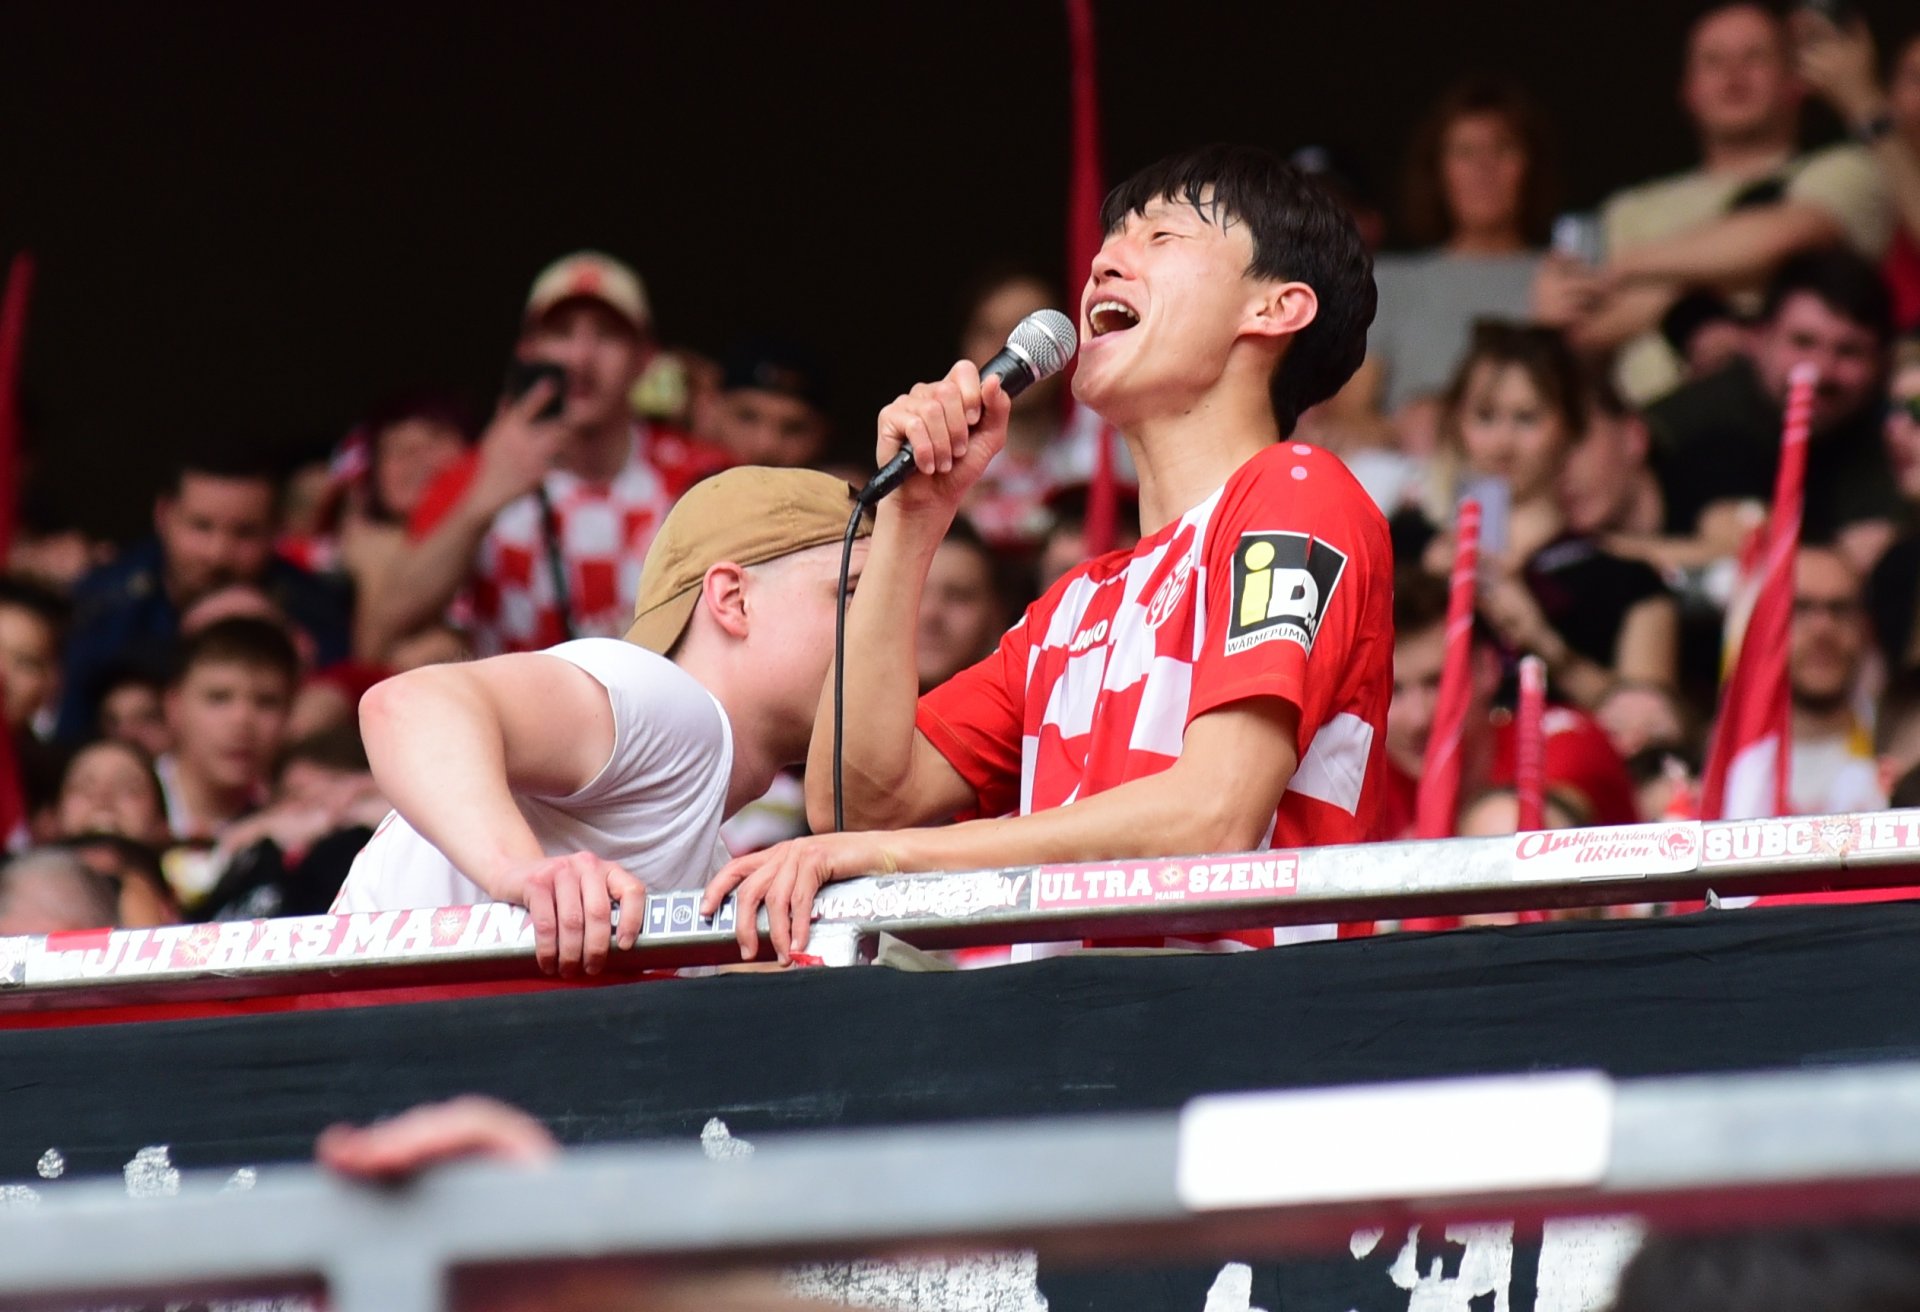 An Kandidaten für die „Humba“ mangelte es in Mainz am 28. Spieltag nicht. Die Wahl der Fans fiel auf Jae-sung Lee…